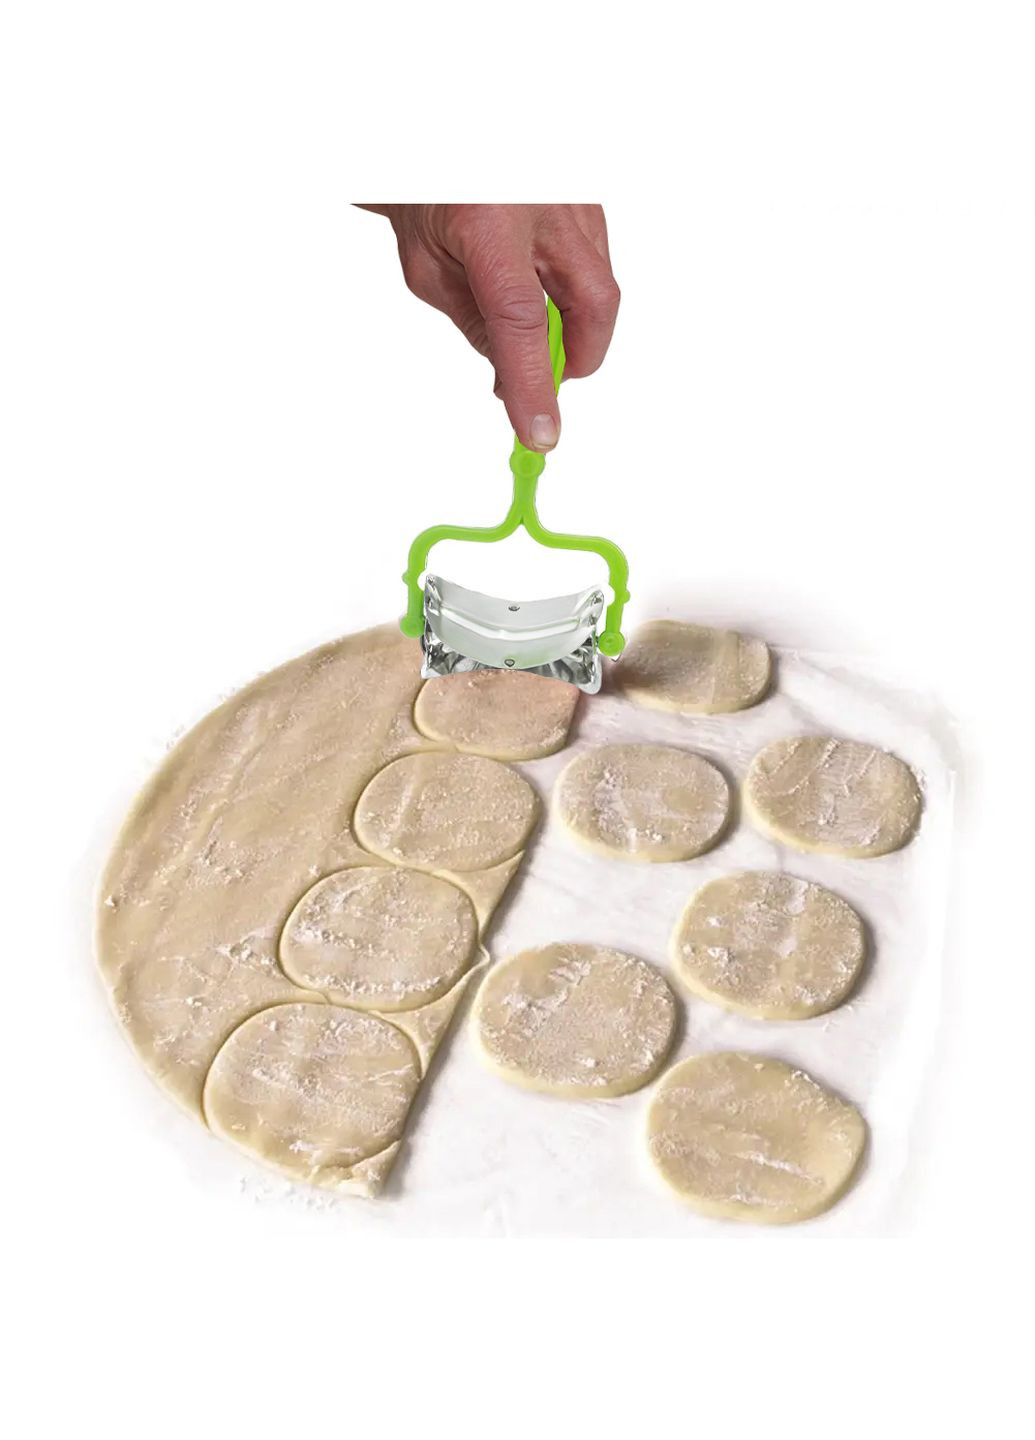 Ролик кулинарный нож для нарезки теста кругами для вареников, пельменей, печенья 15 см Kitchette (260043526)